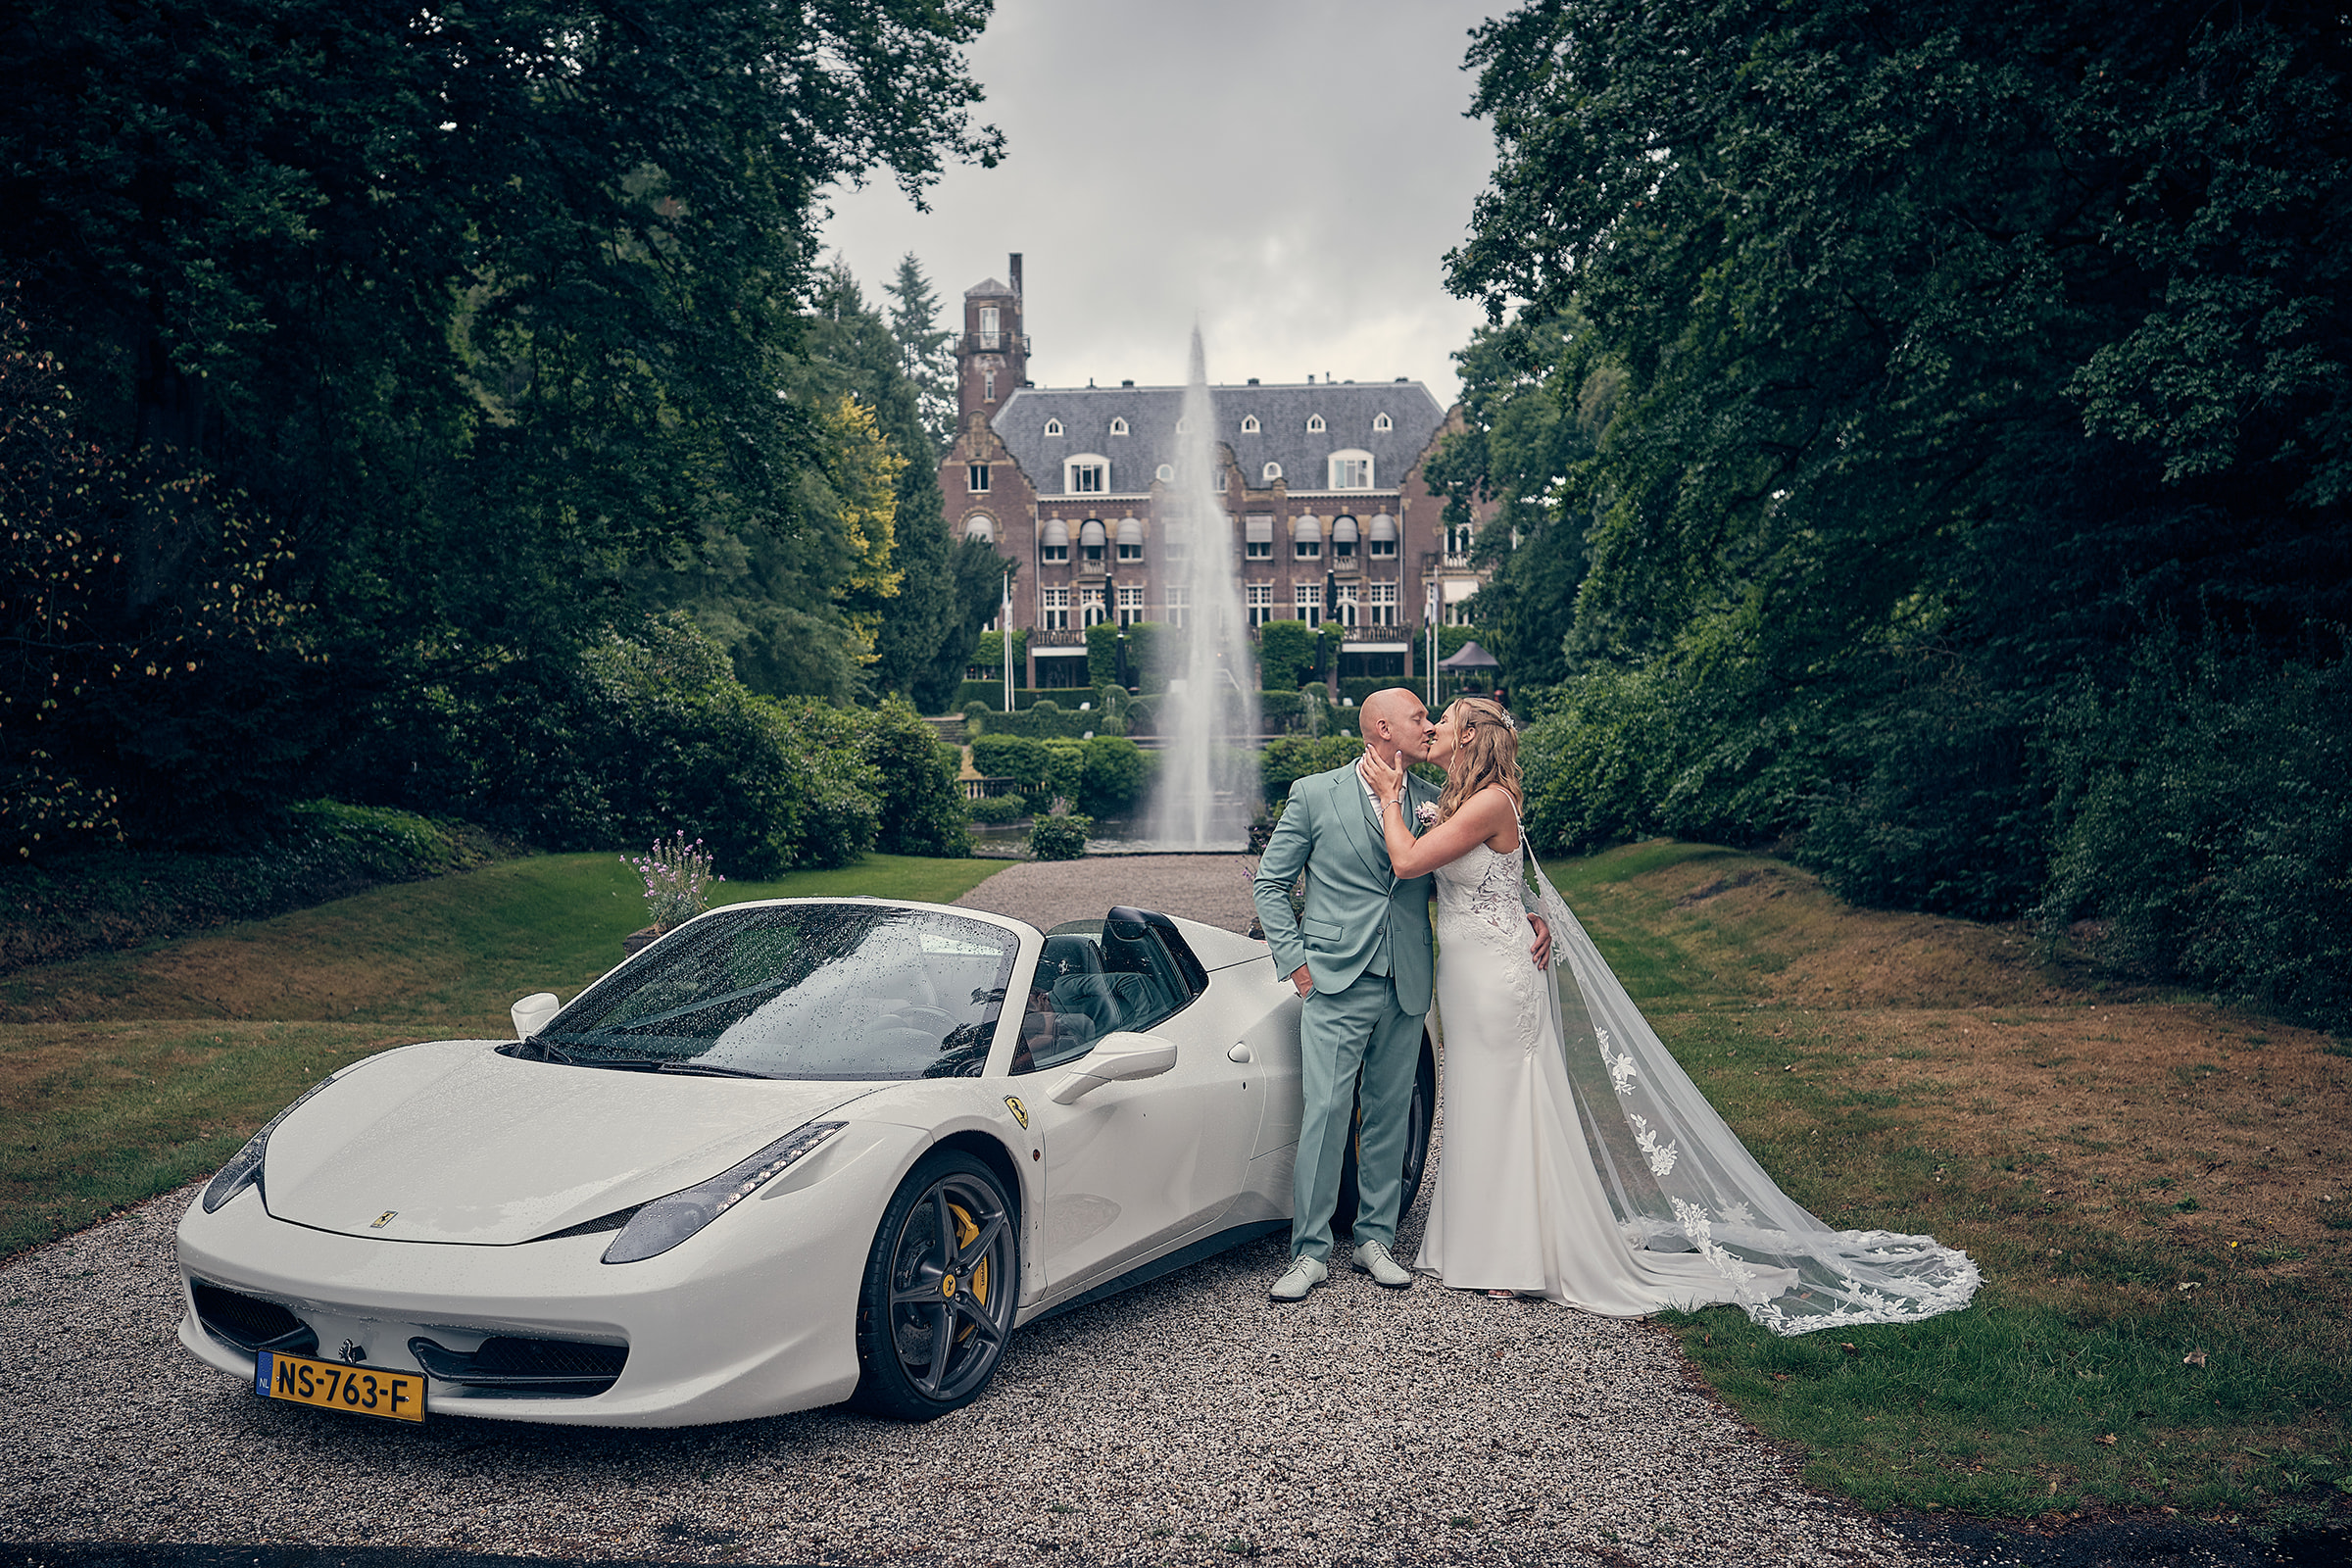 Trouwfotograaf Kasteel Hooge Vuursche in Baarn - De bruidsfotografie van Dennis en Kim - 